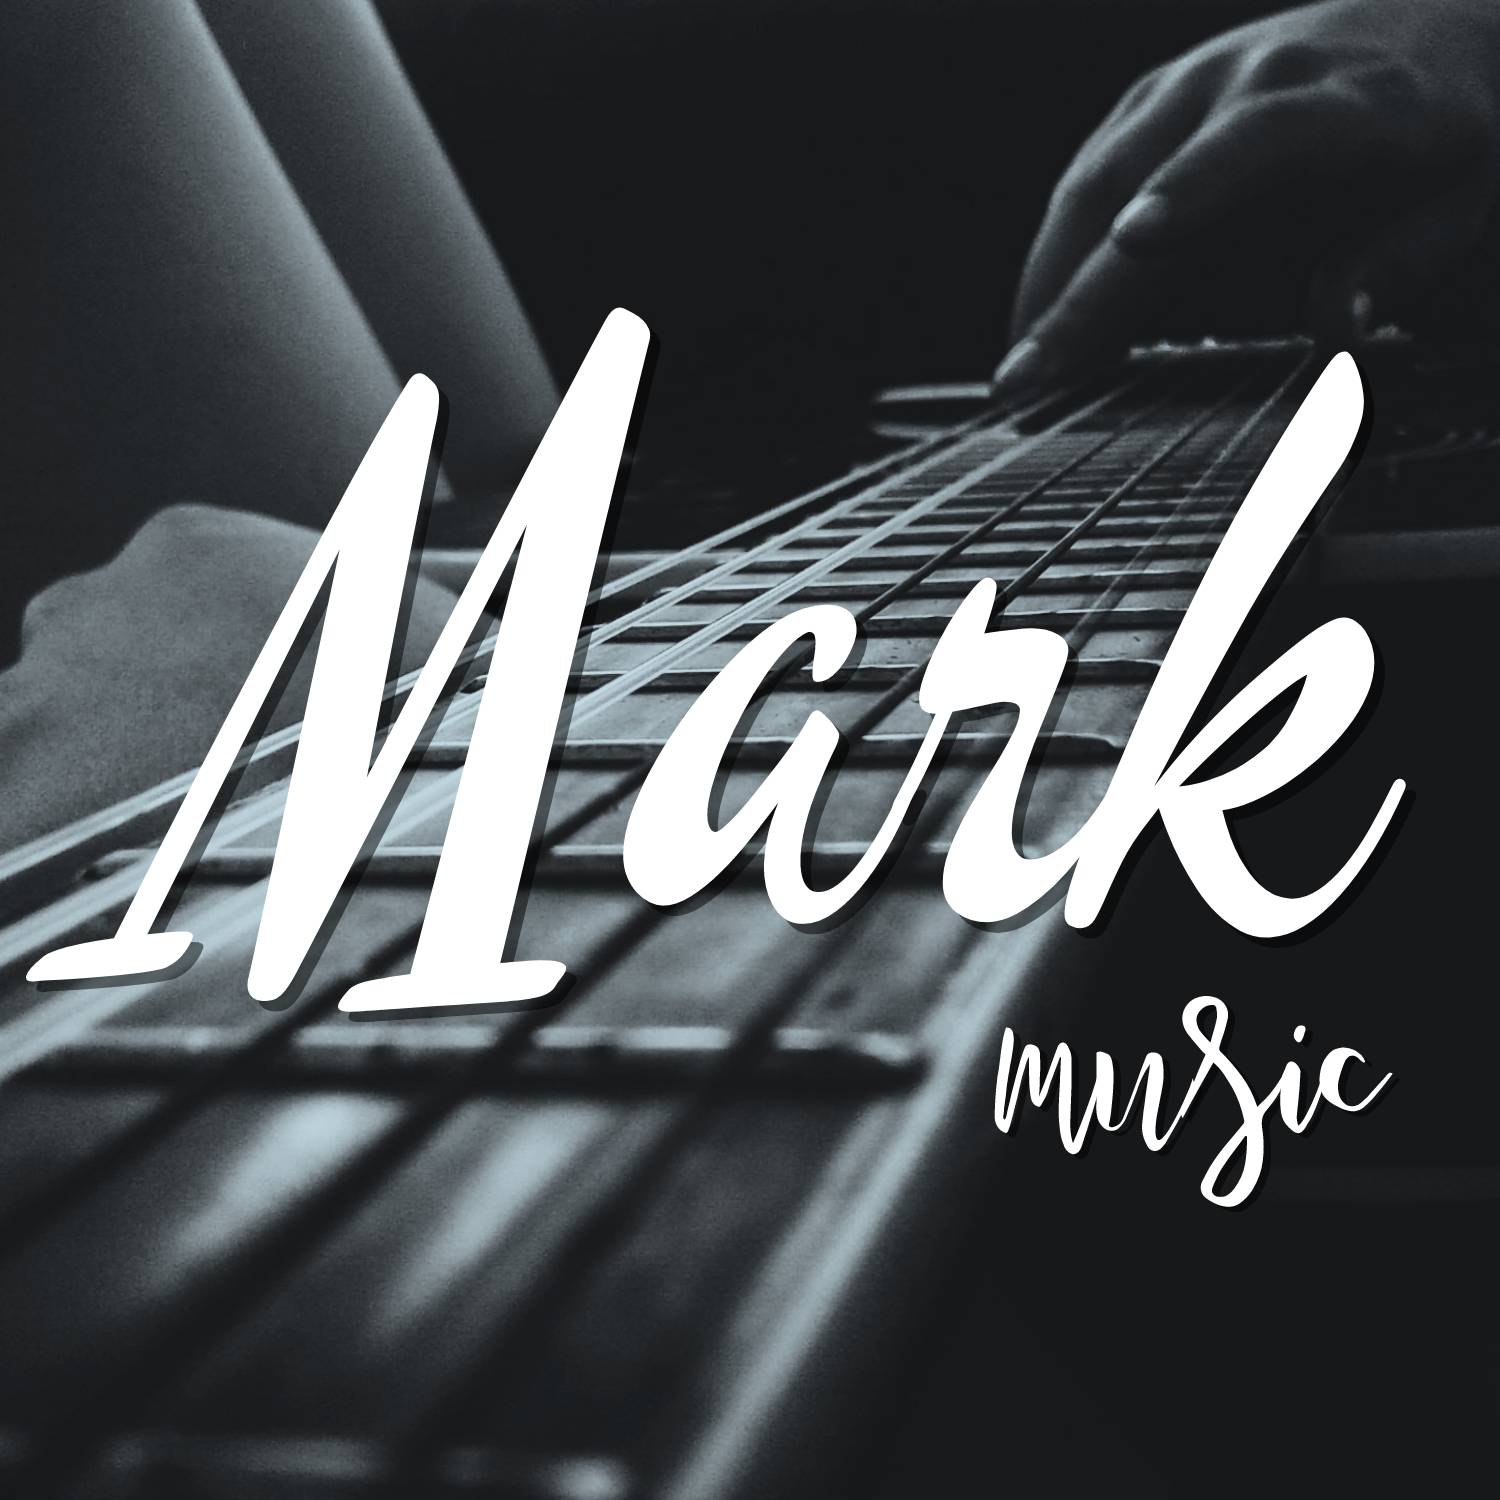 Музыка mark music records. Рутуб логотип. Mark Music records. Рутуб новый лого. Музыка Mark обои.